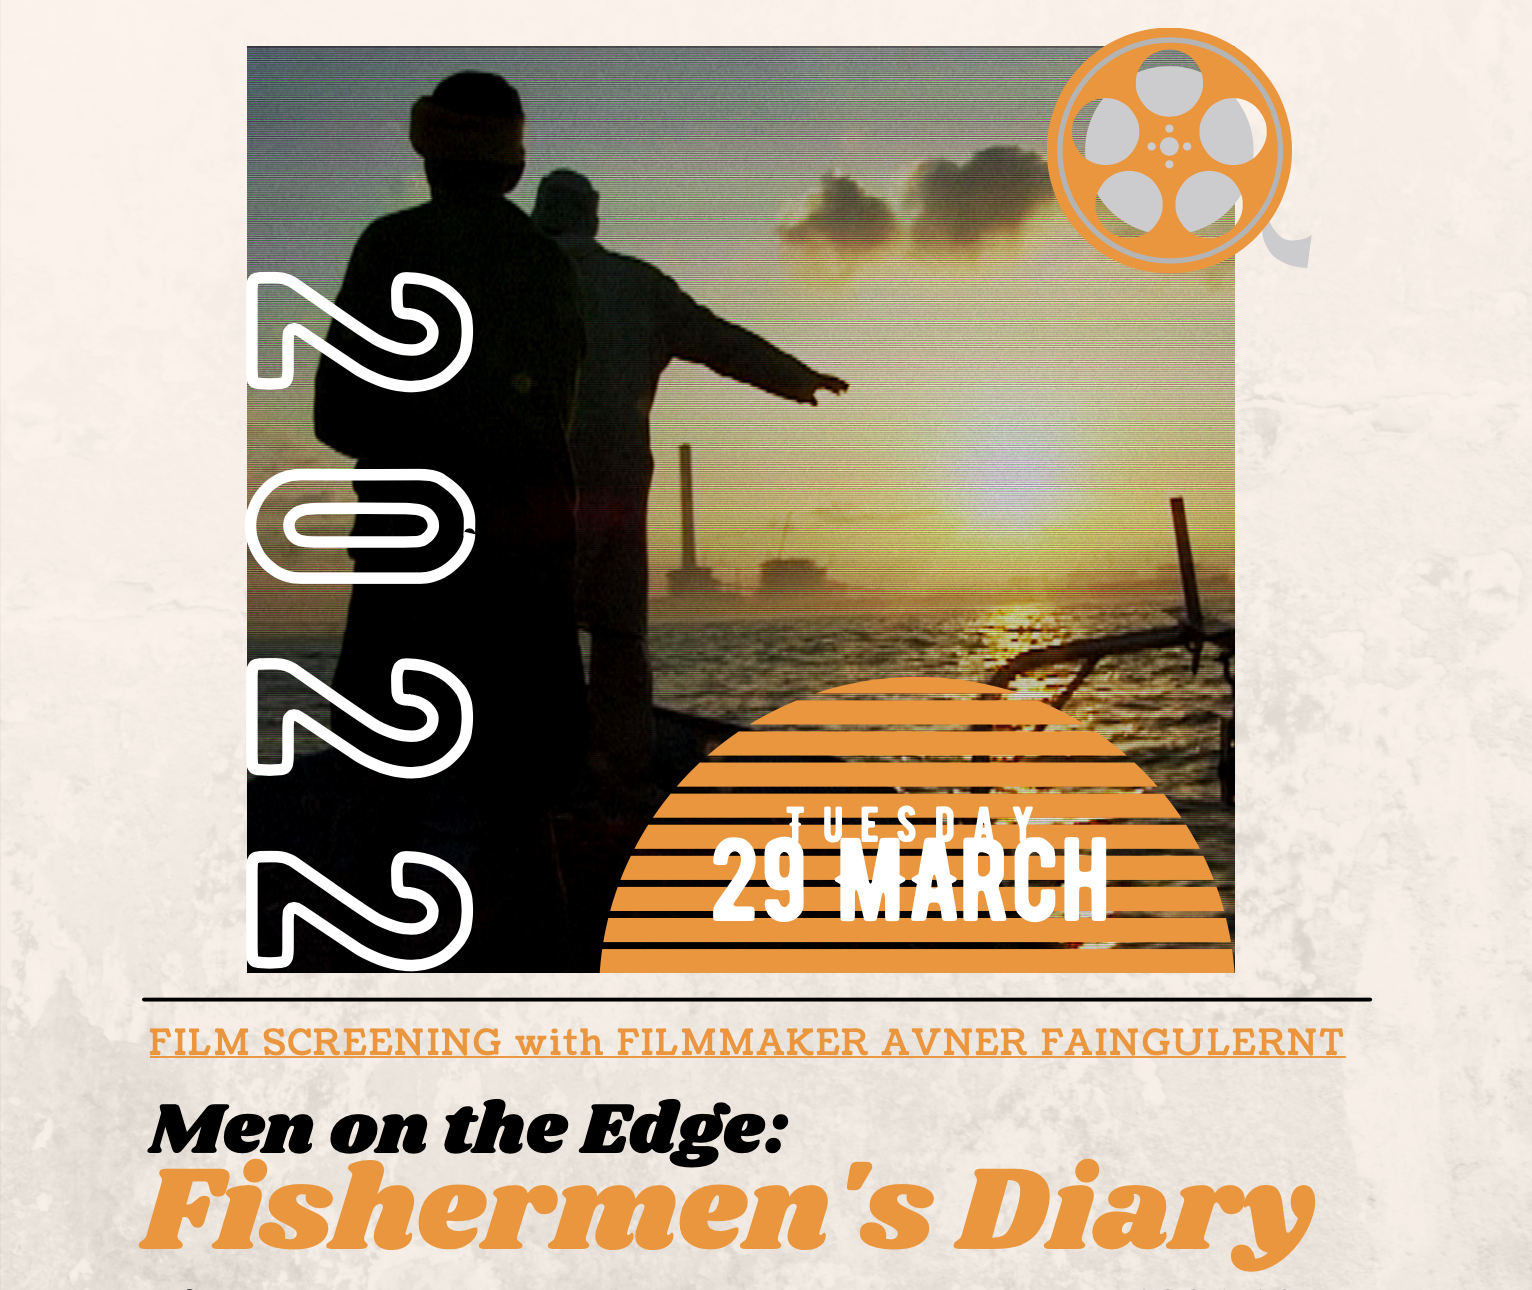 Tuesdsay 29 March Visiting Filmmaker Avner Faingulernt presents "Men on the Edge: Fishermen's Diary"